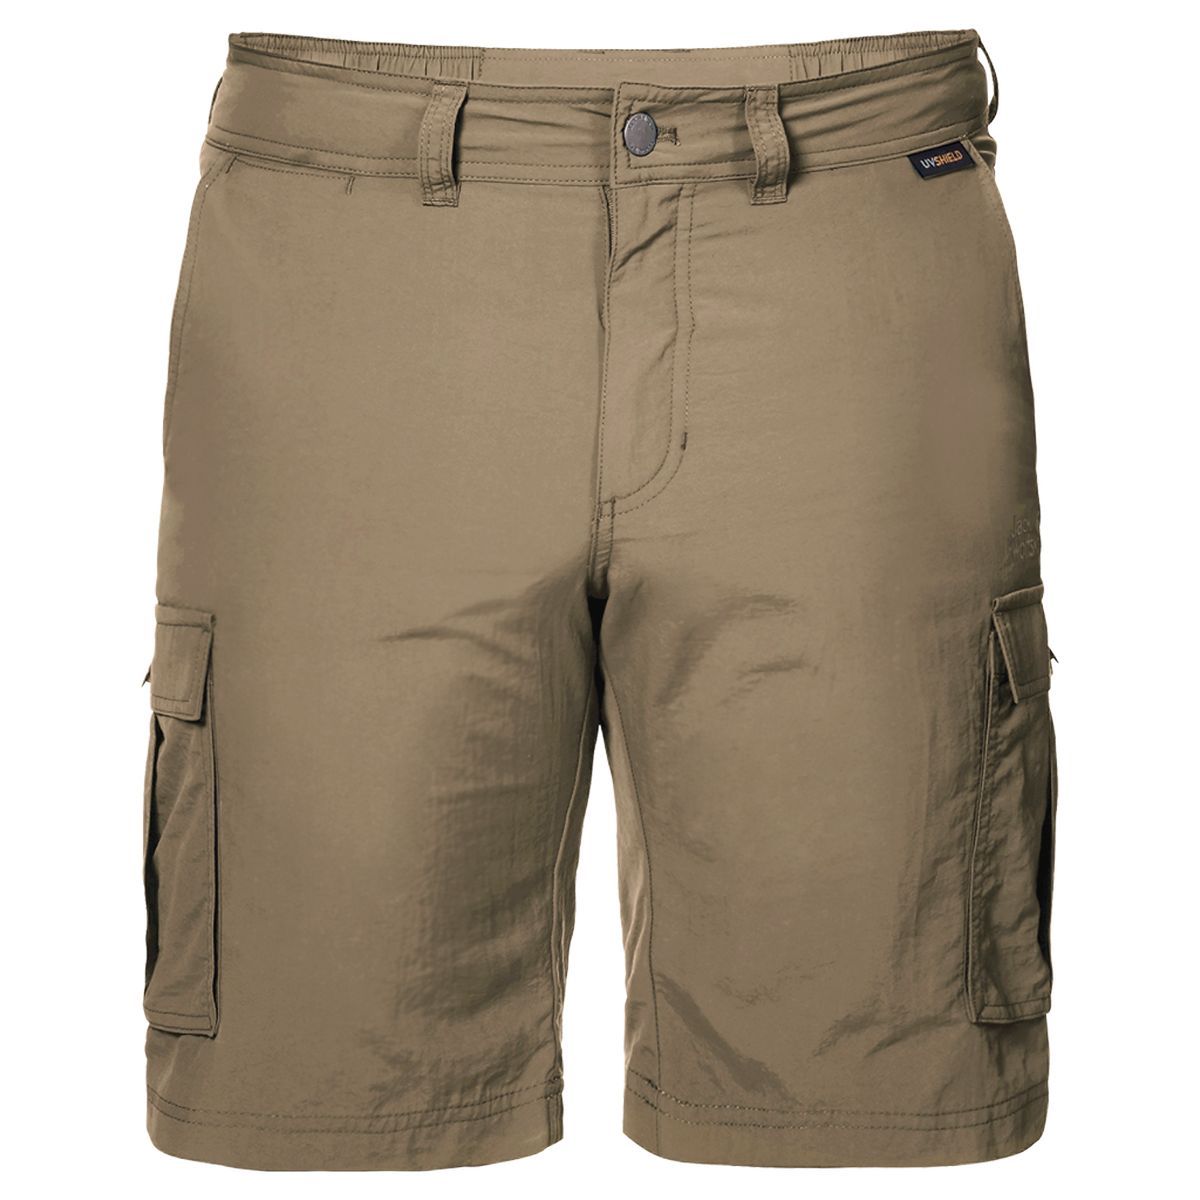   Jack Wolfskin Canyon Cargo Shorts, : . 1504201-5605.  48